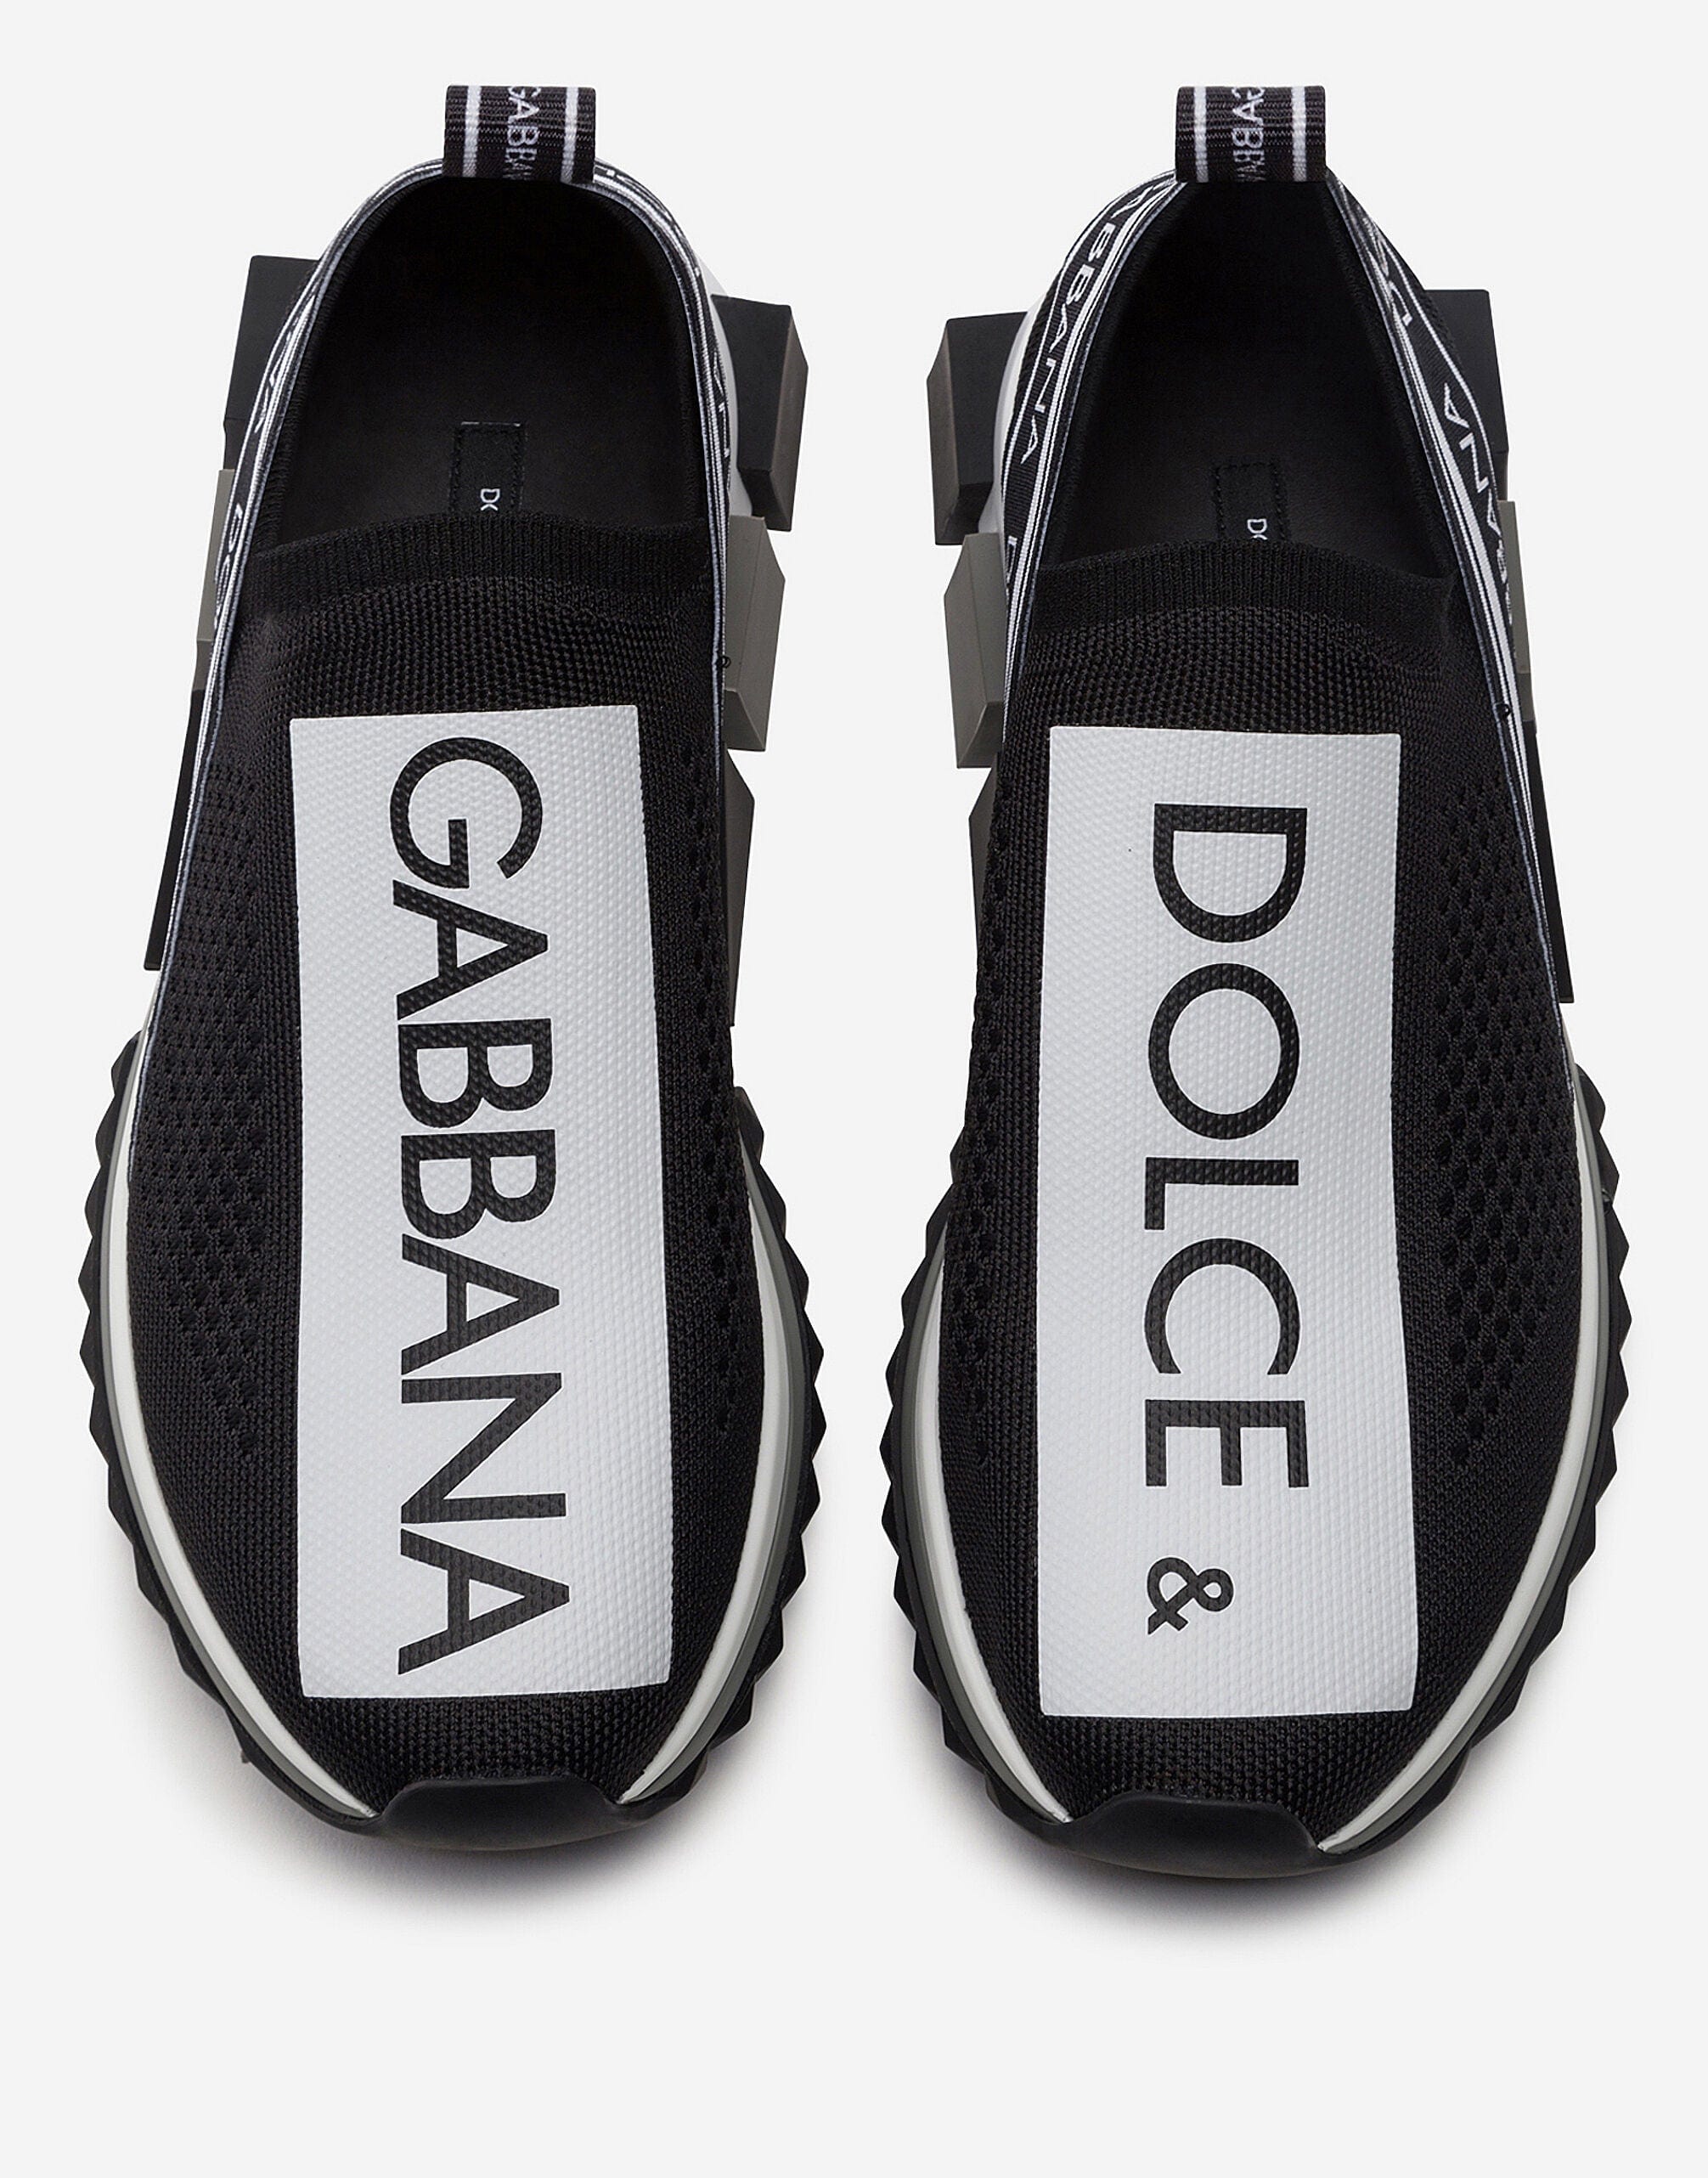 Dolce & Gabbana Branded Sorrento Sneakers